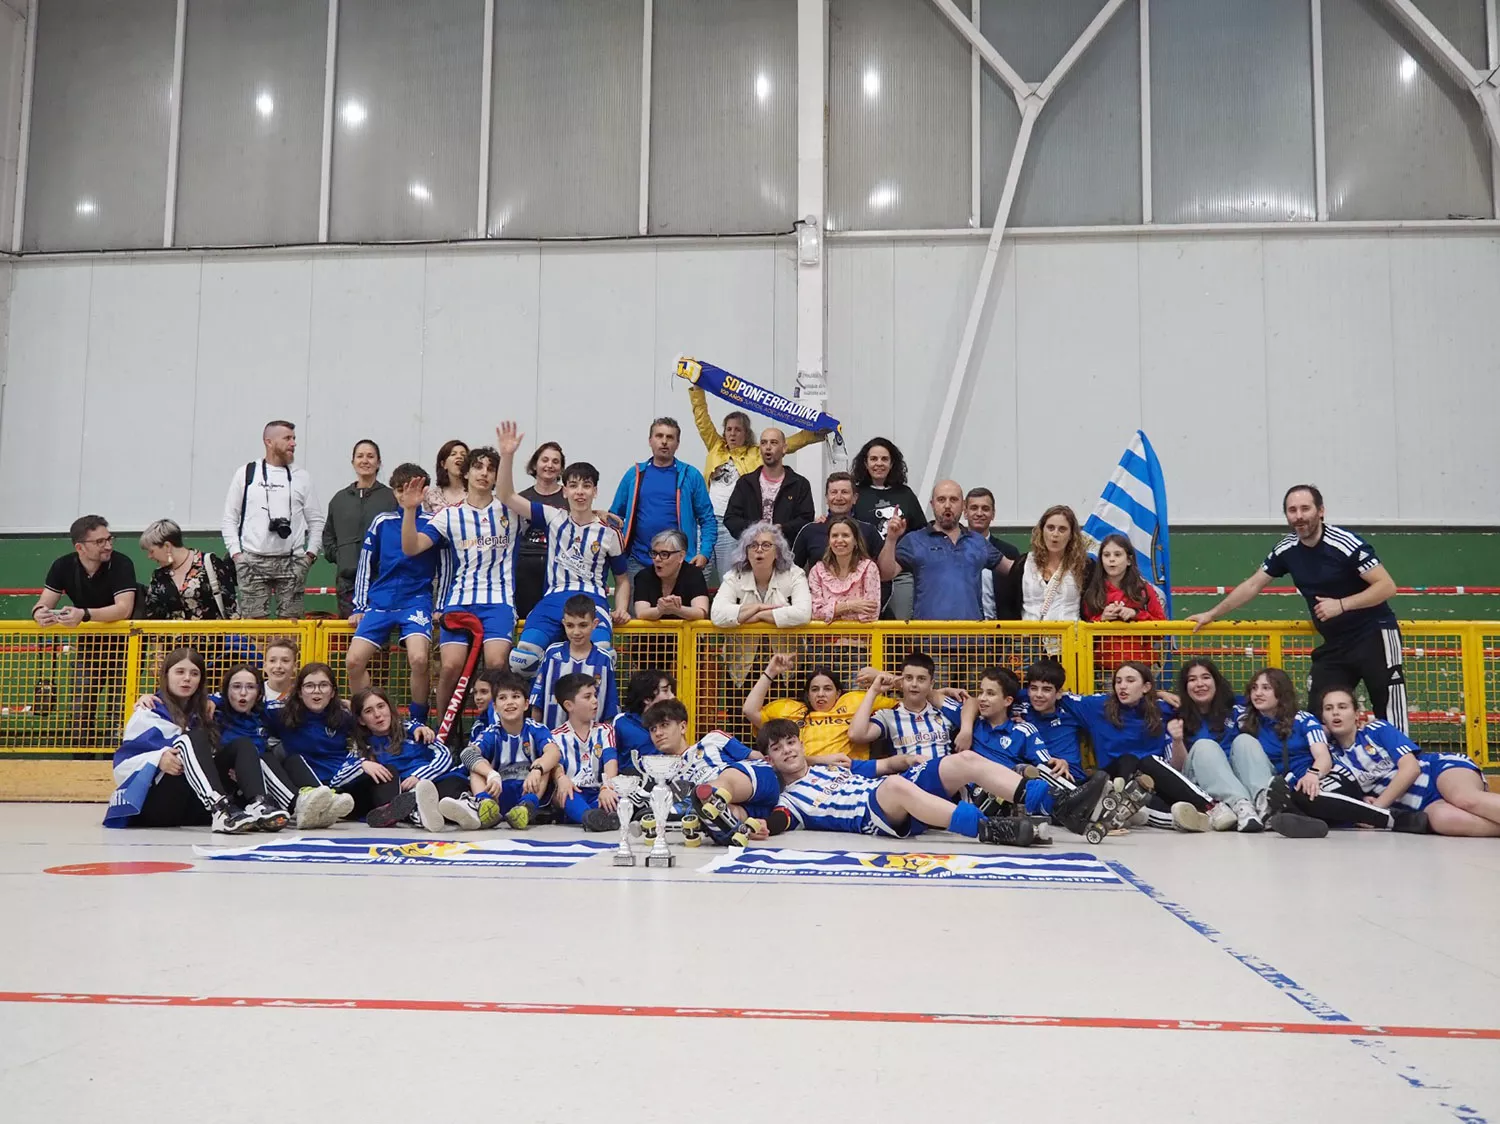 La Ponferradina Hockey cierra la temporada coronándose campeón de Copa de CyL en categoría Juvenil 1